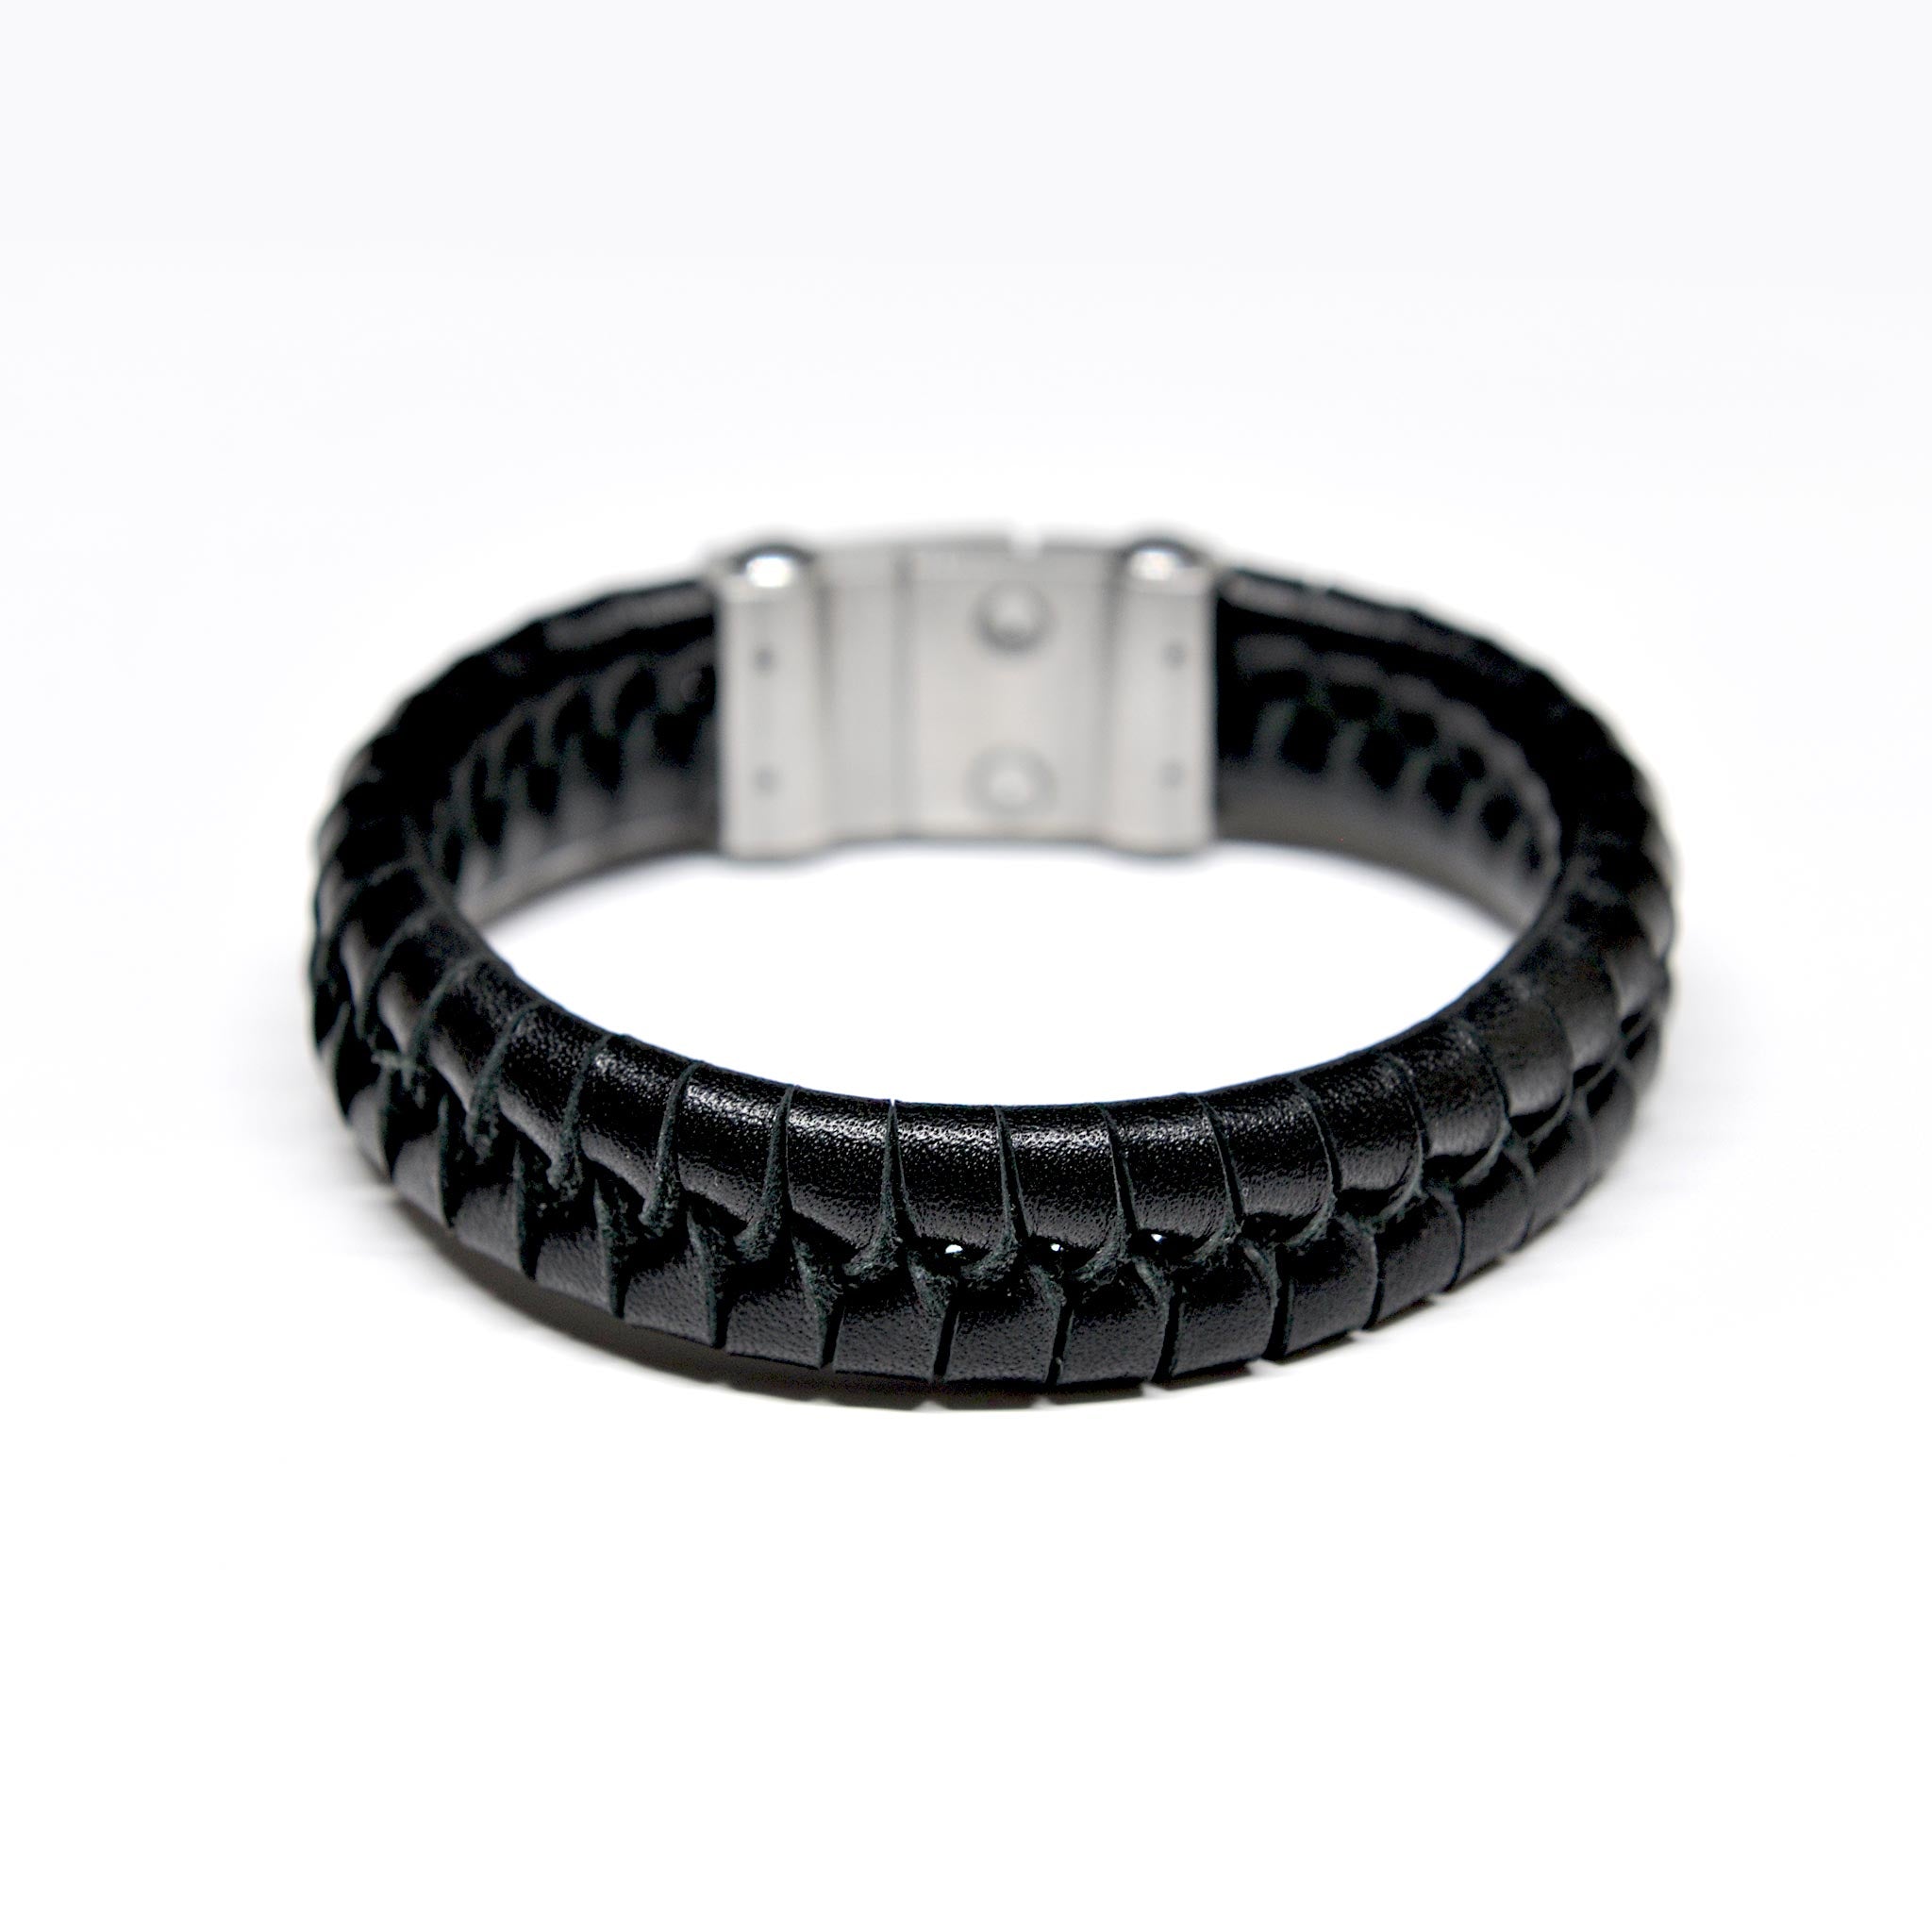  Designer bracelets